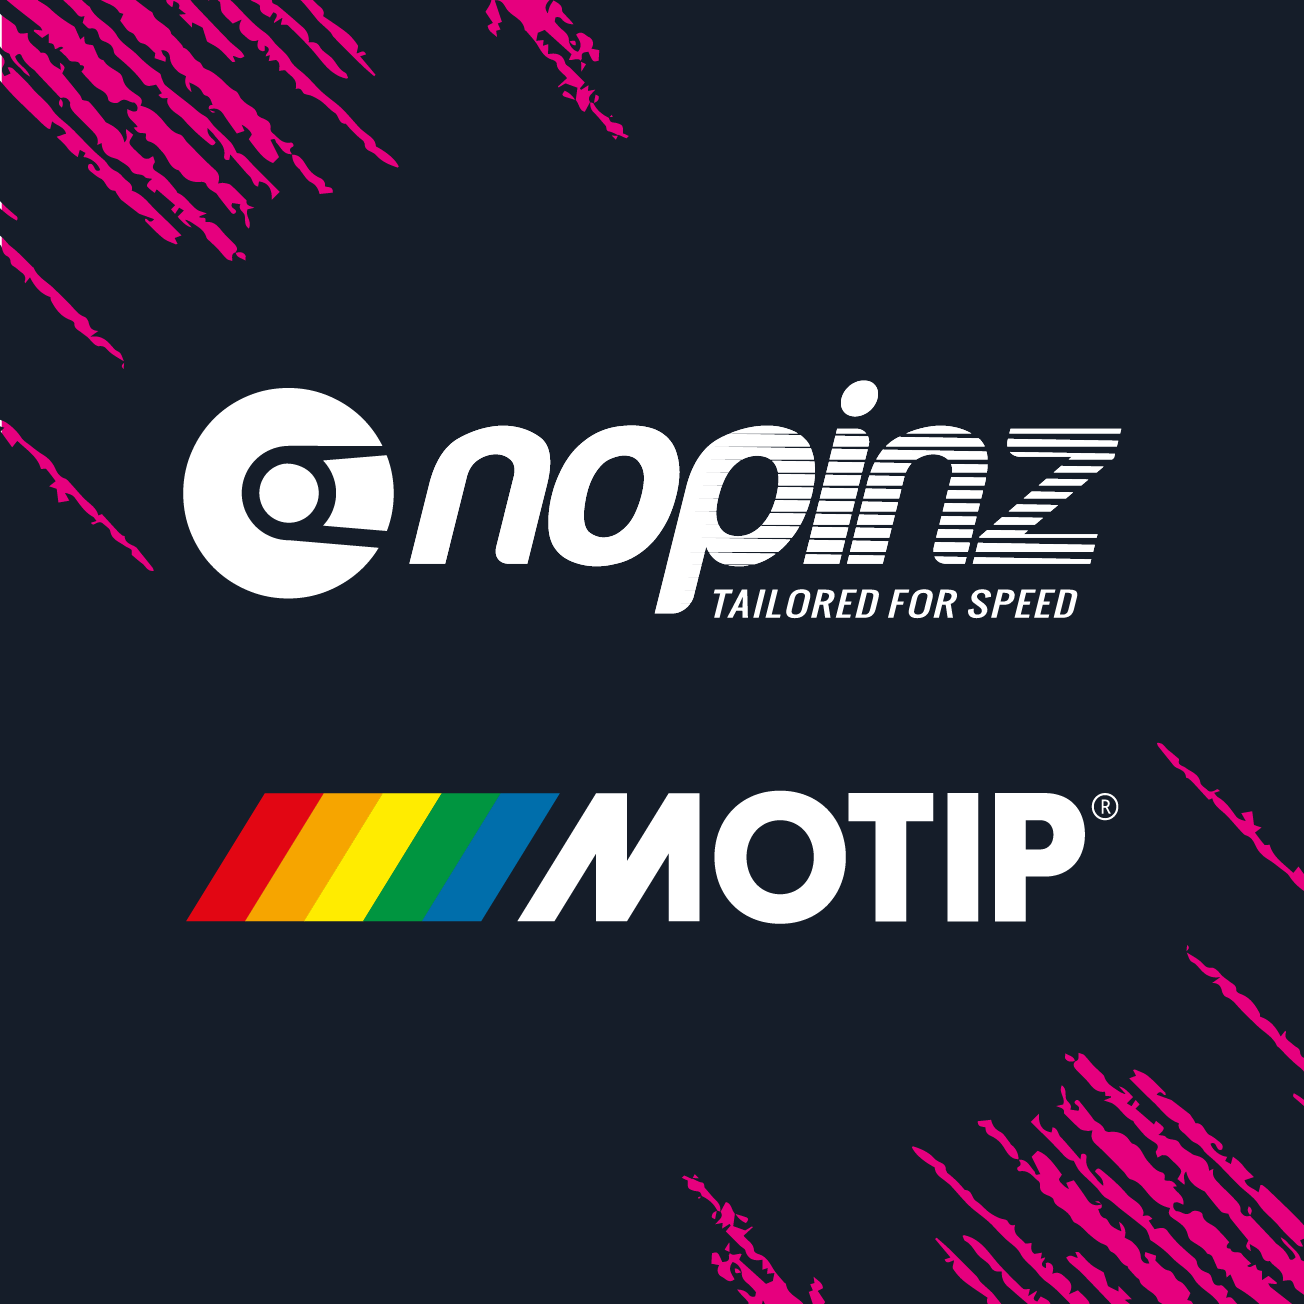 Club Image for NOPINZ MOTIP RACE TEAM